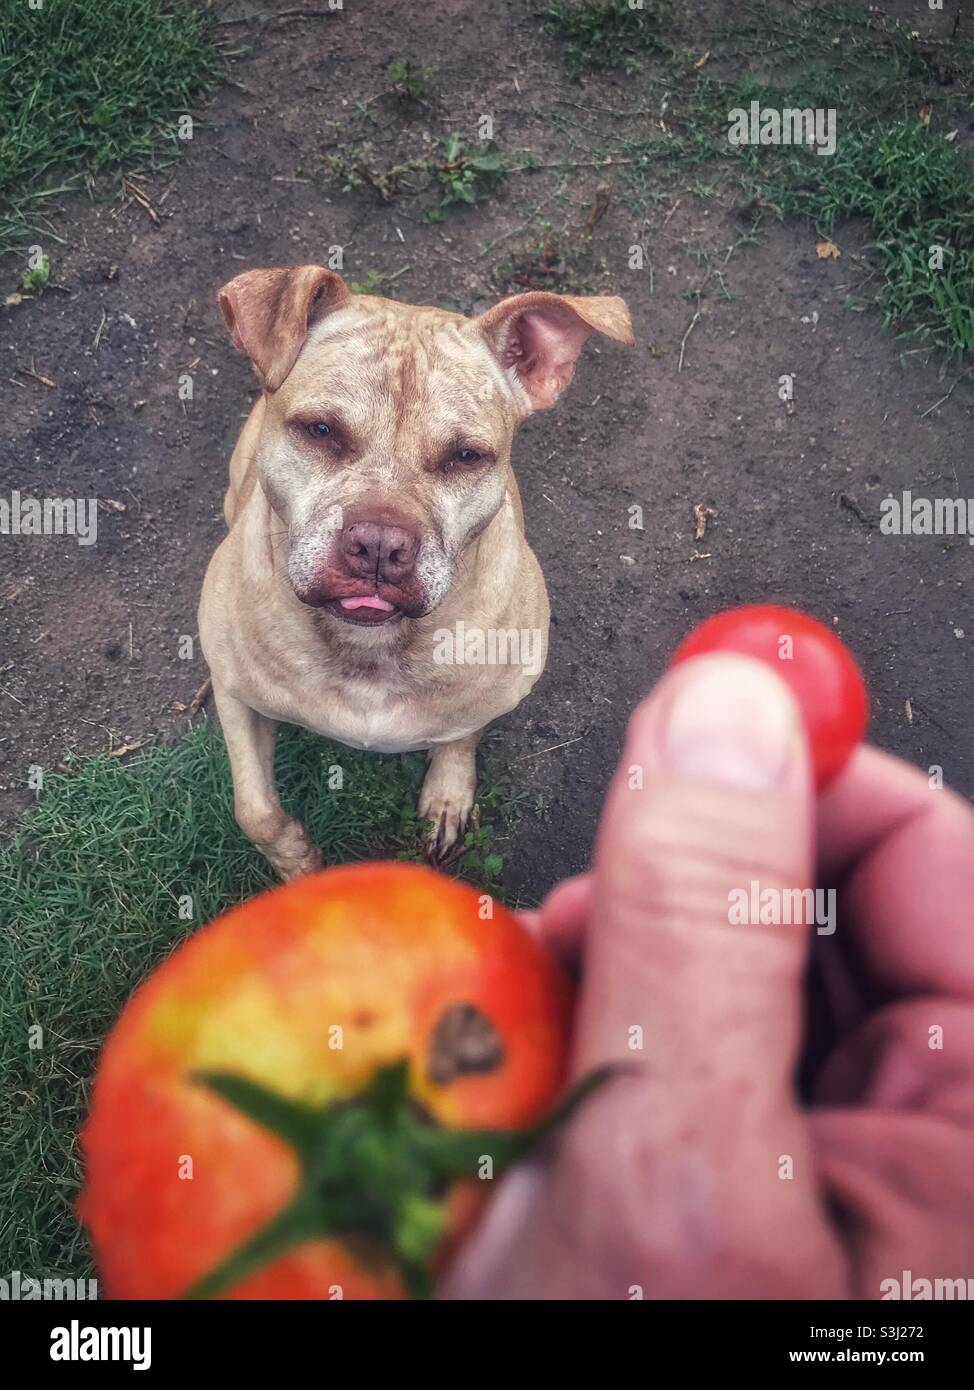 Le pit Bull est sceptique au sujet du traitement de la tomate Banque D'Images